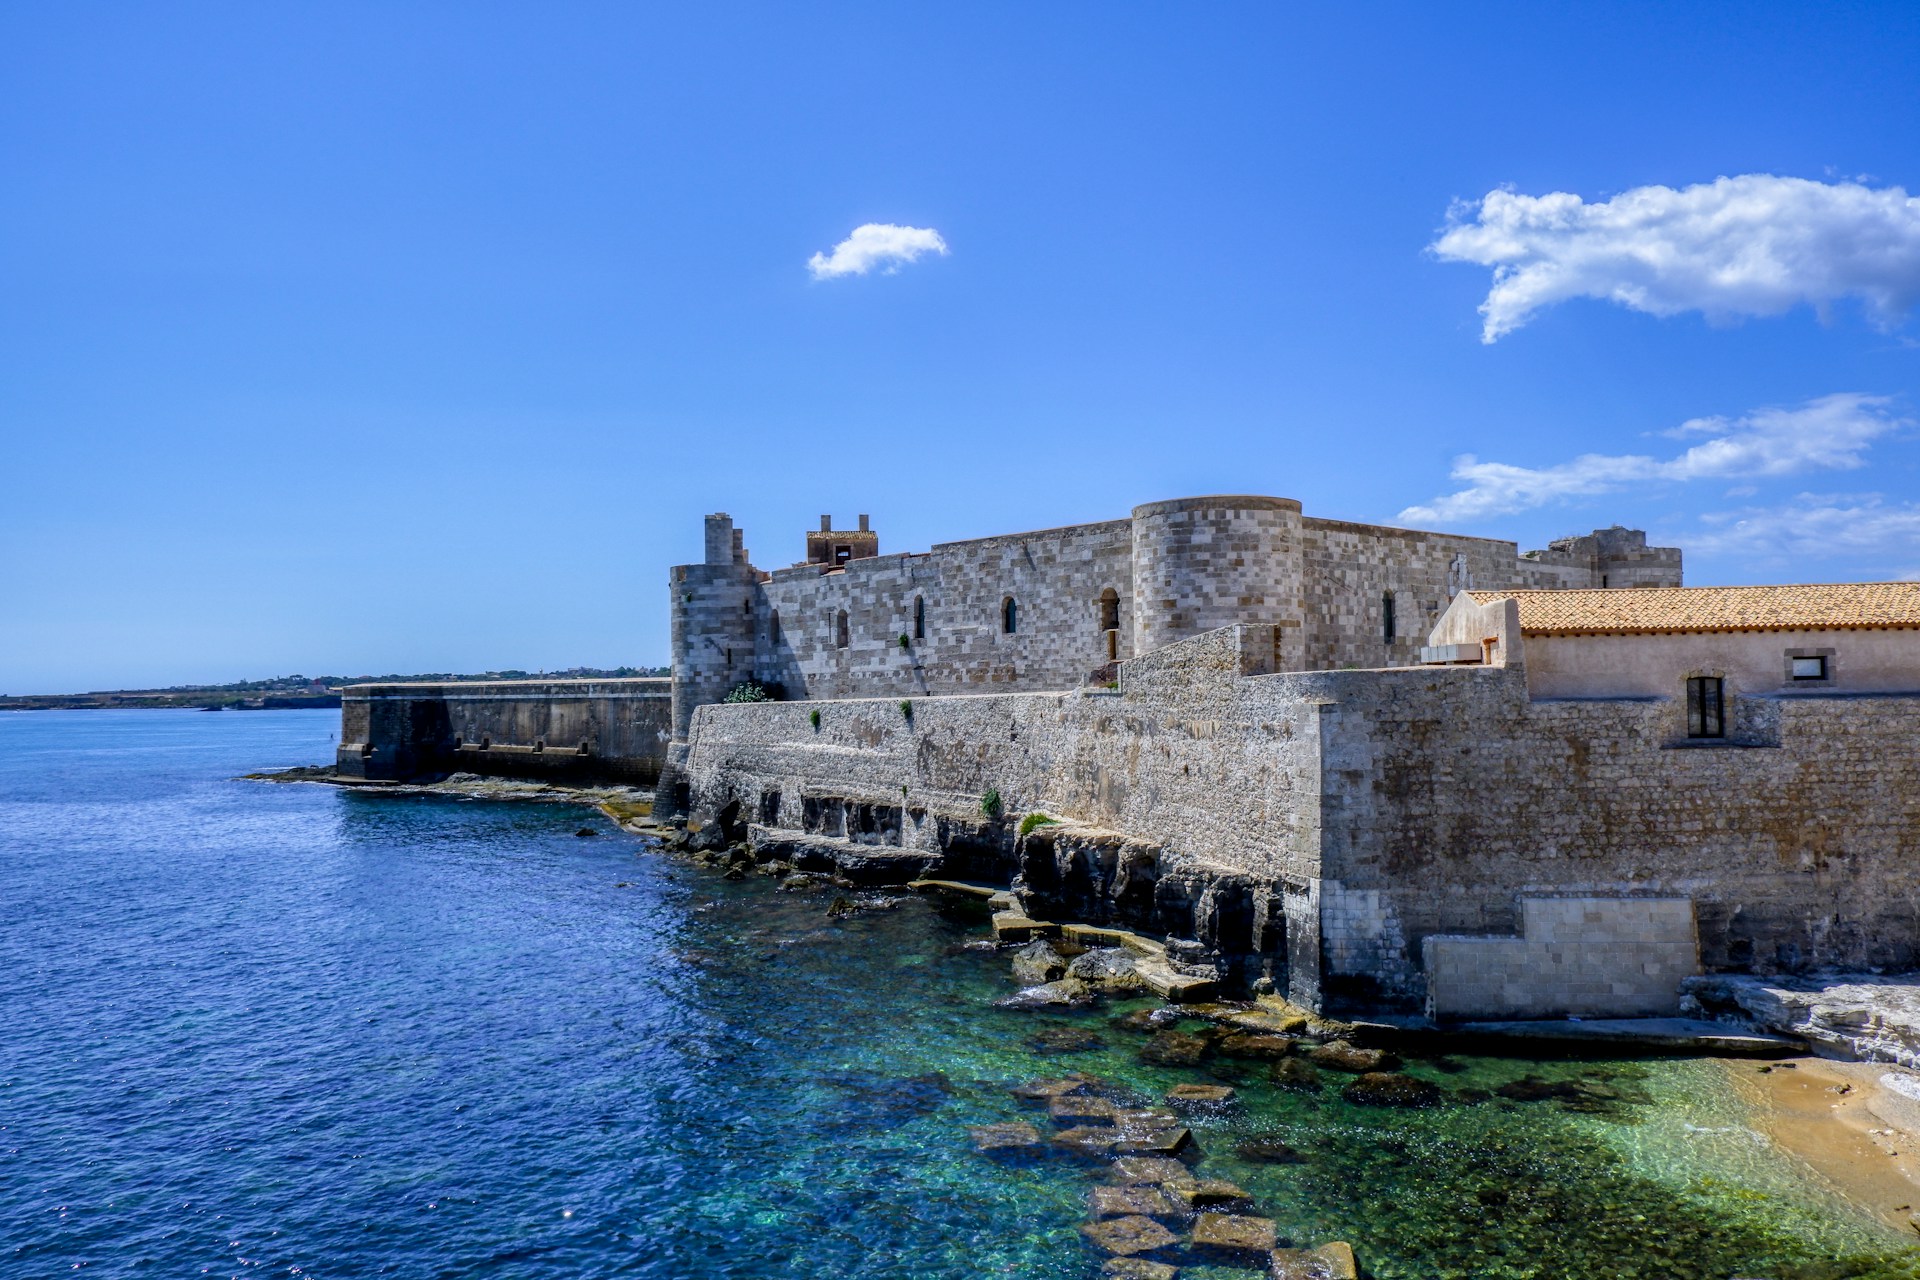 Sicilia orientale: un viaggio nel barocco siciliano